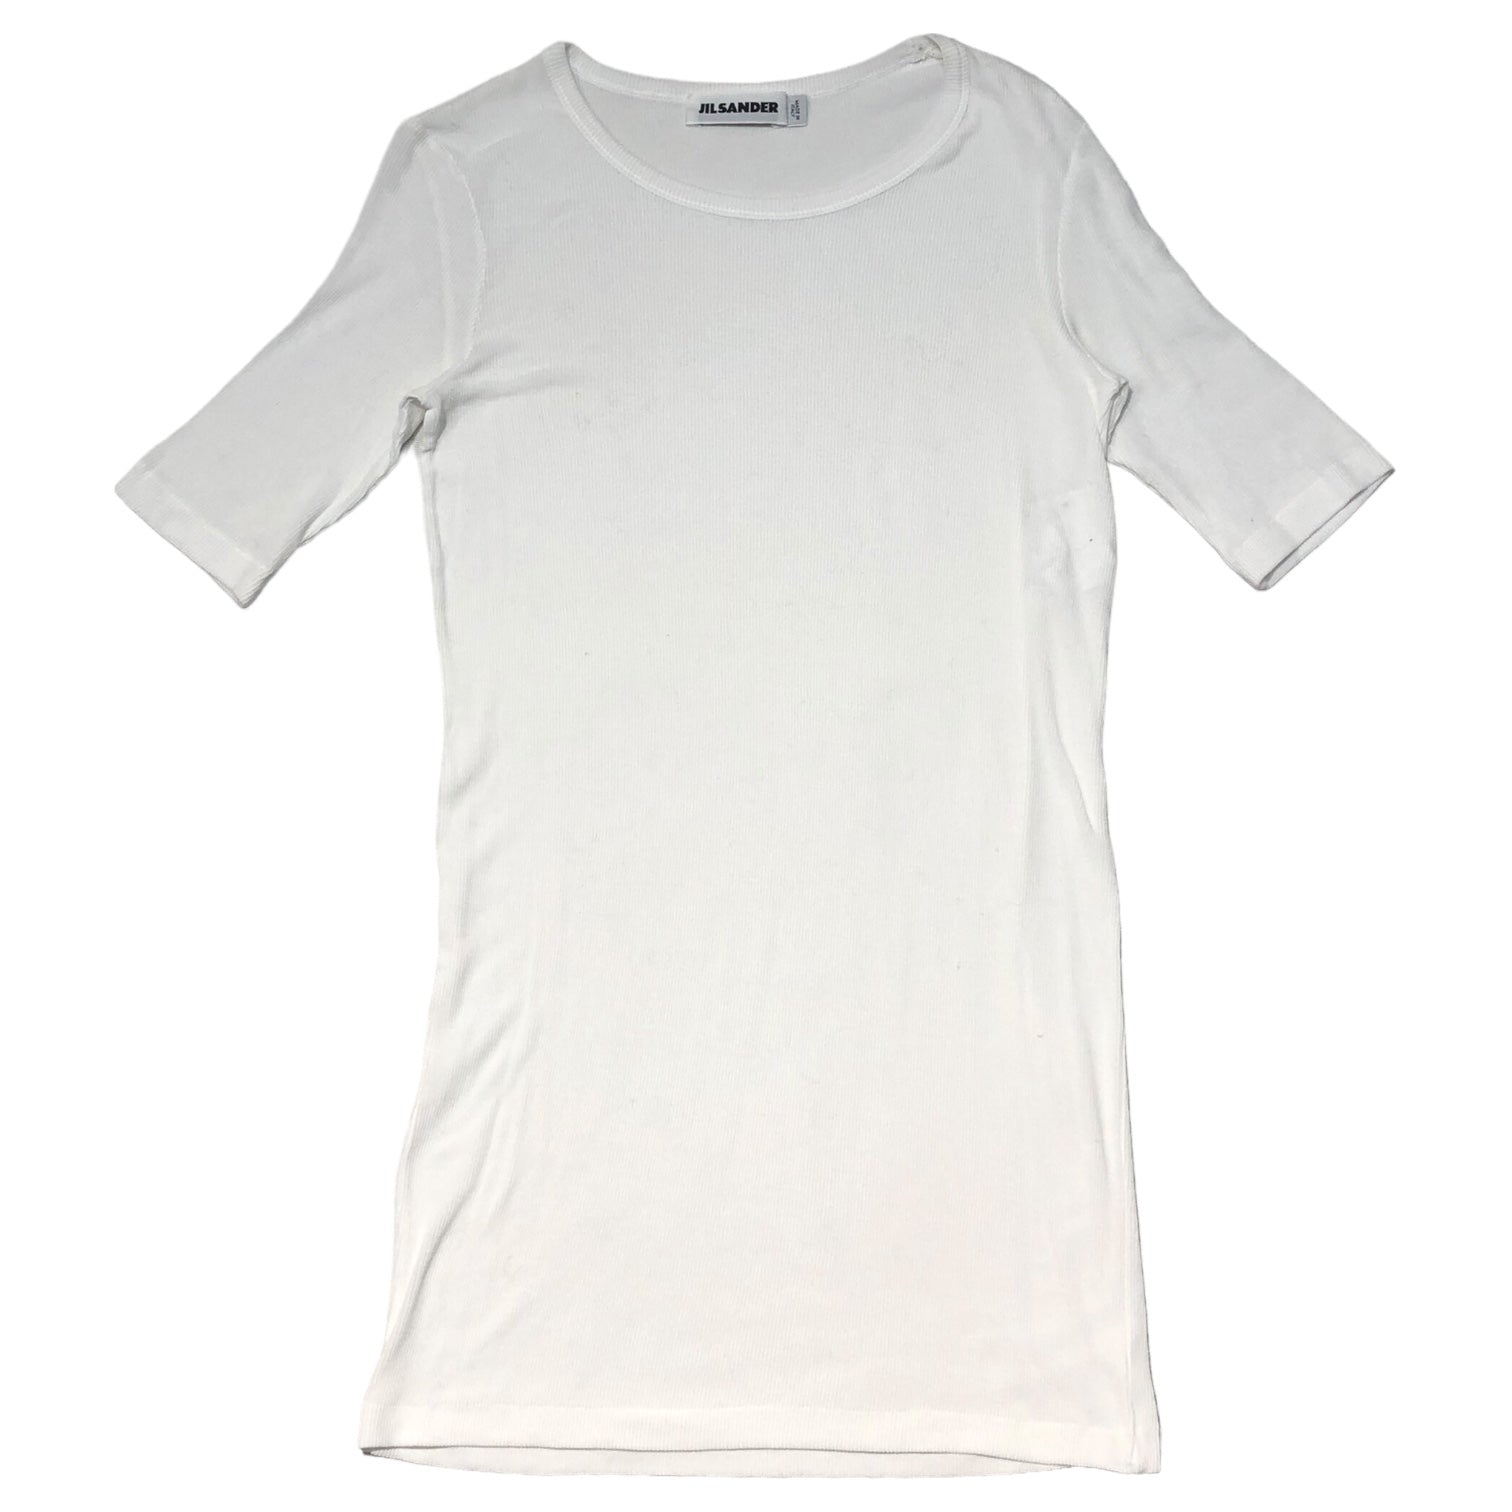 JIL SANDER(ジルサンダー) 11SS Cotton rib cut and sew コットン リブ カットソー 20111W00193 S ホワイト ラフシモンズ期 Tシャツ